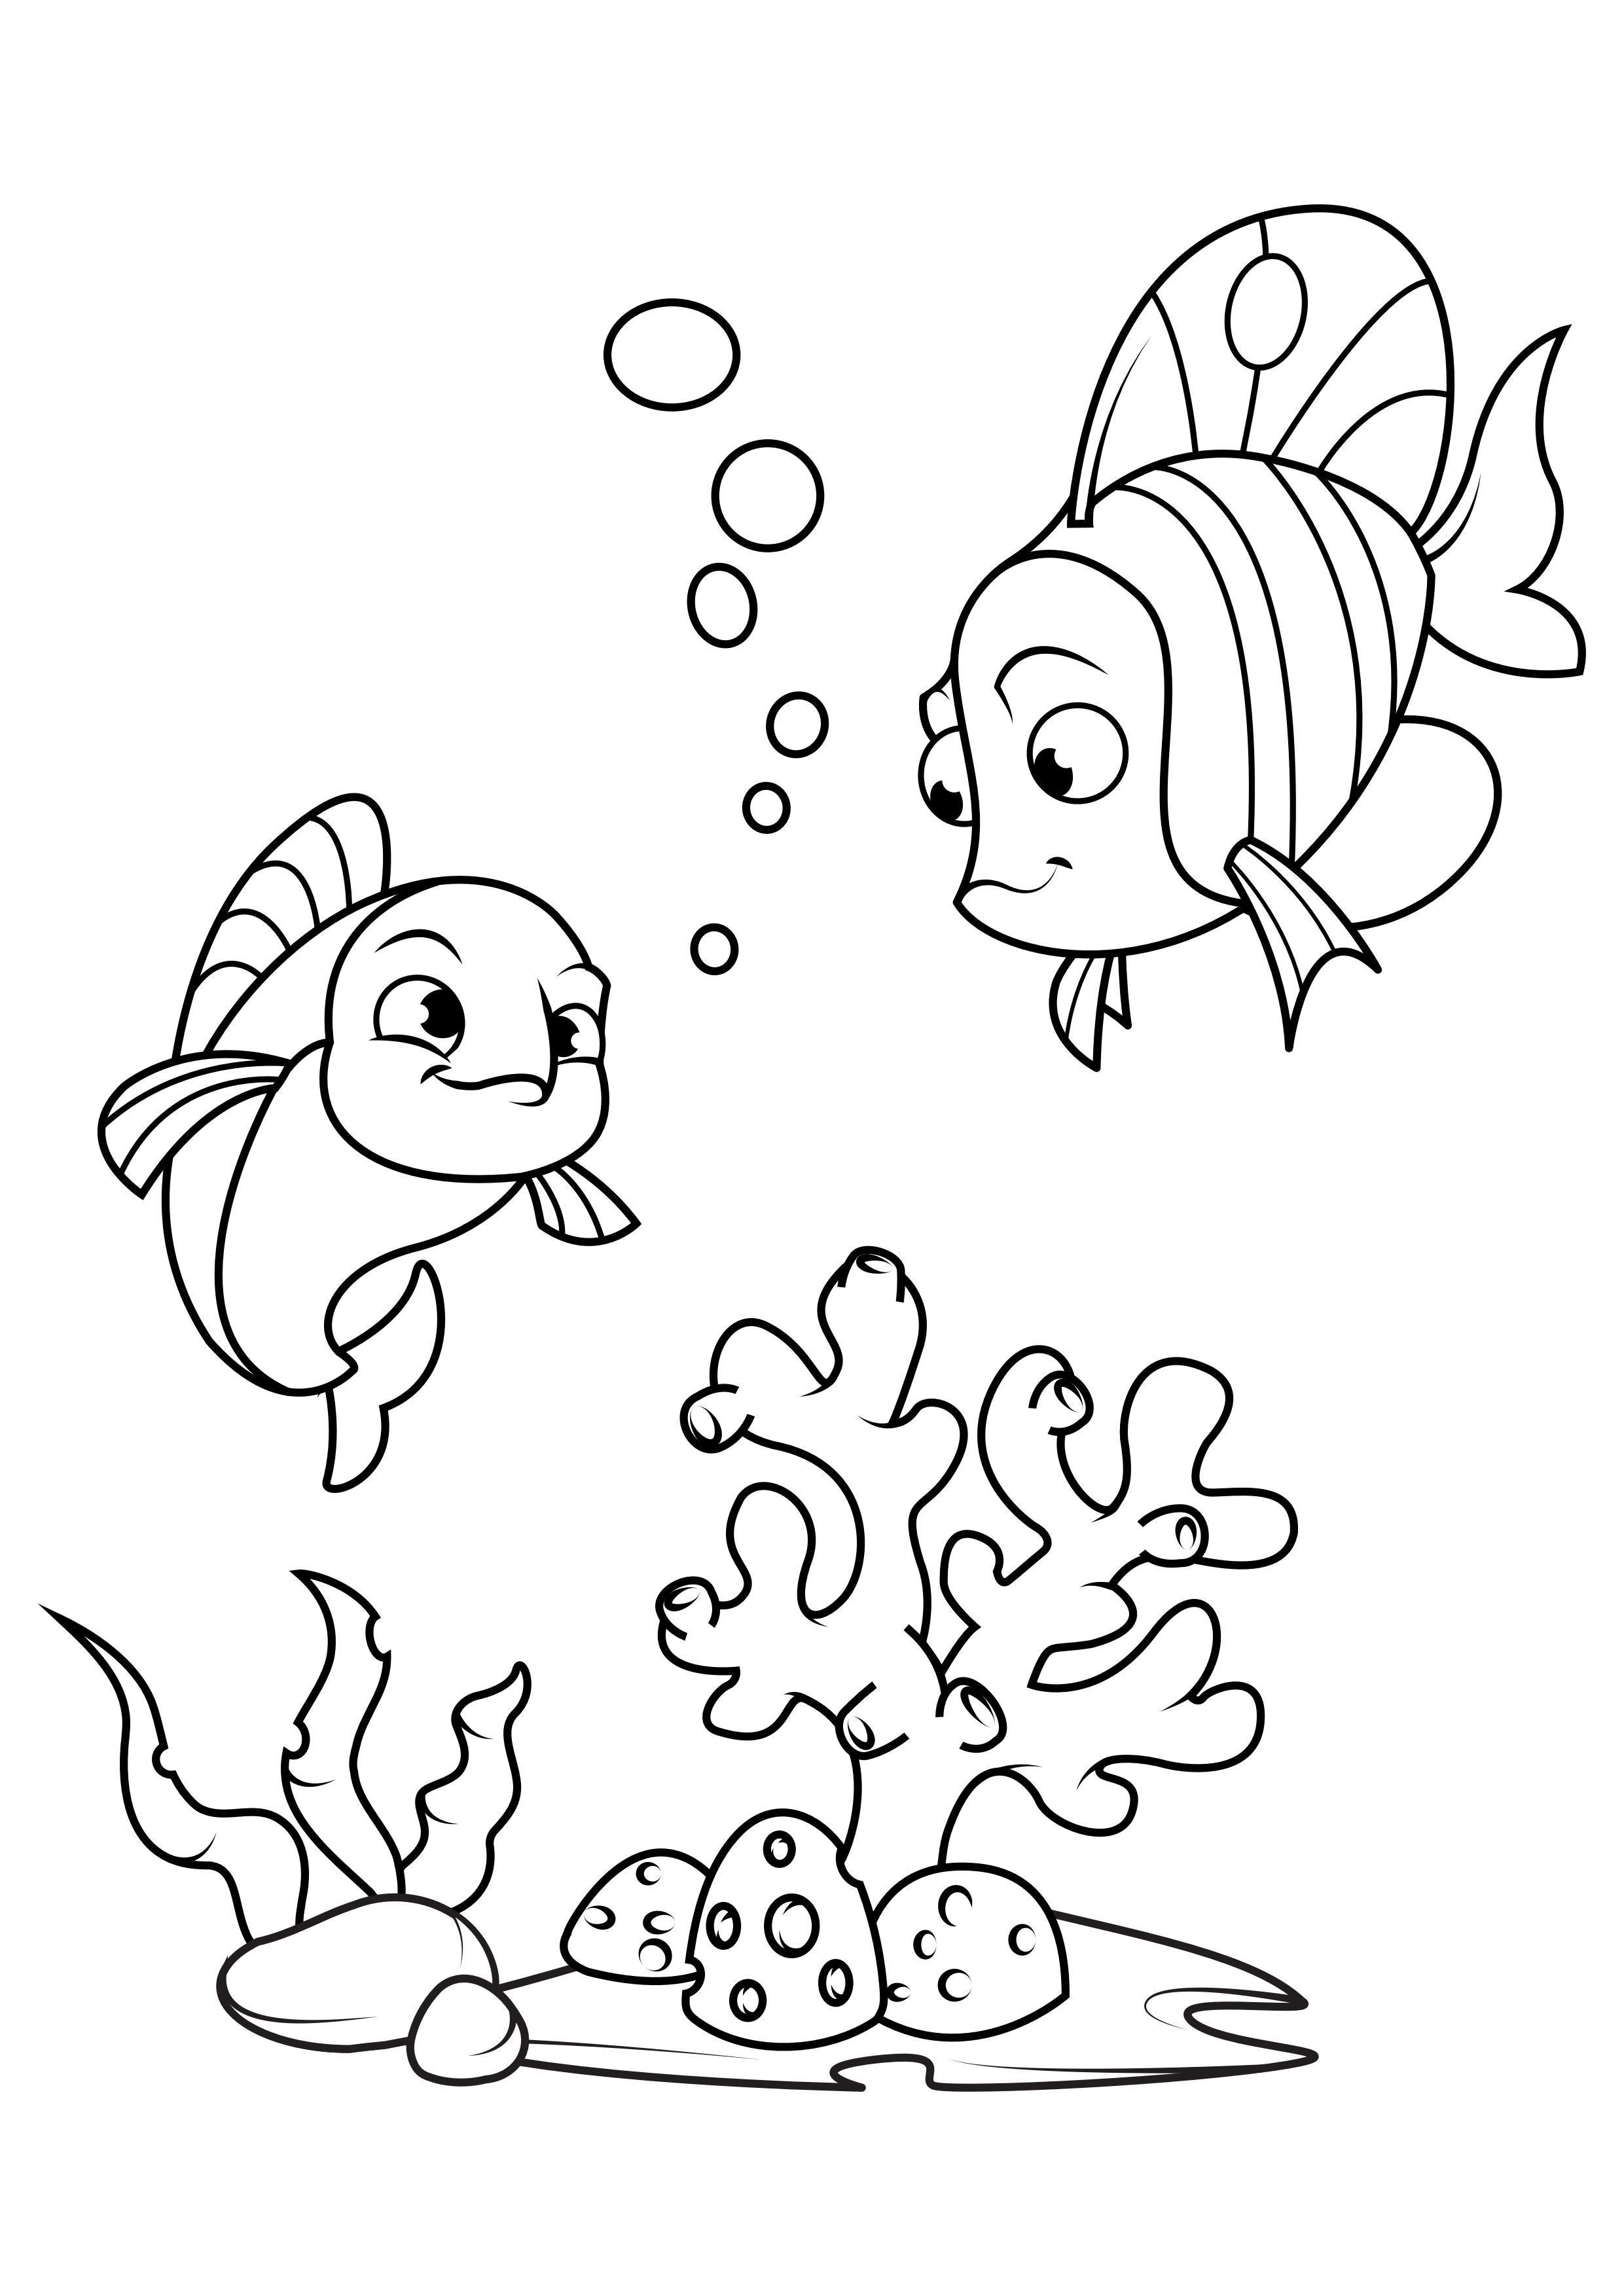 Dibujo para colorear pescado con amigo en el mar